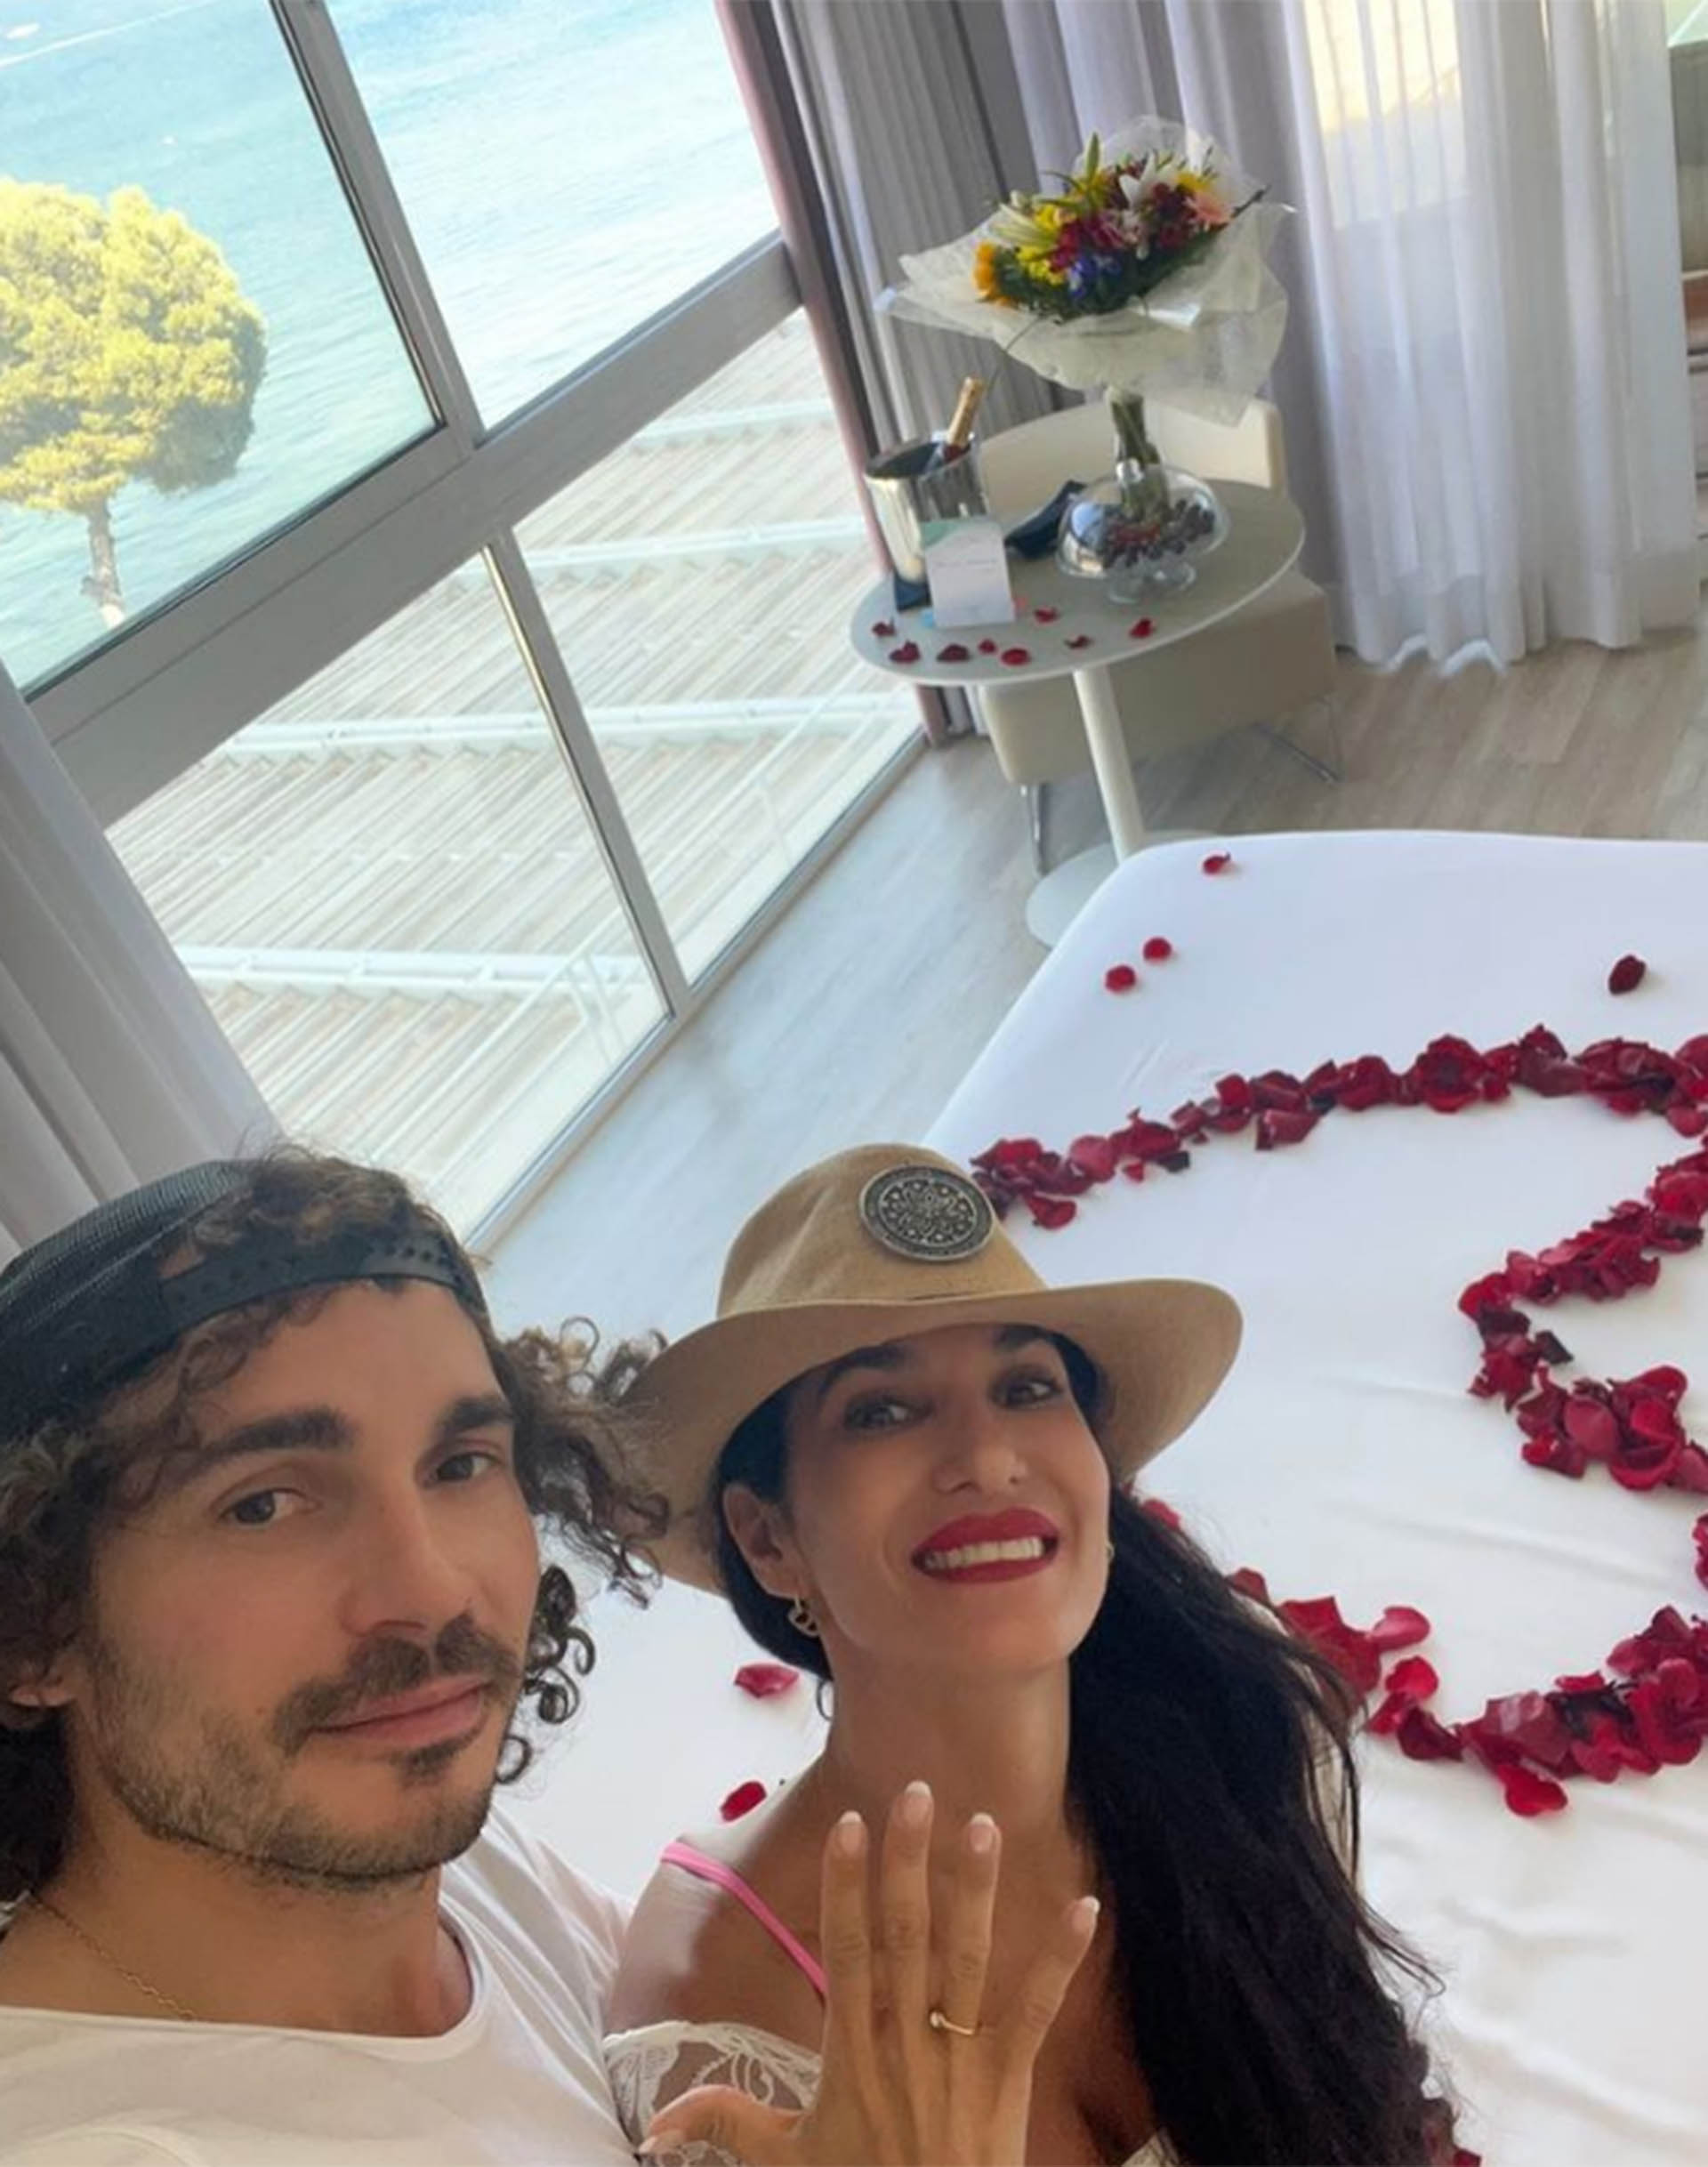 Silvina Escudero y Federico el día del pedido de boda (Instagram)